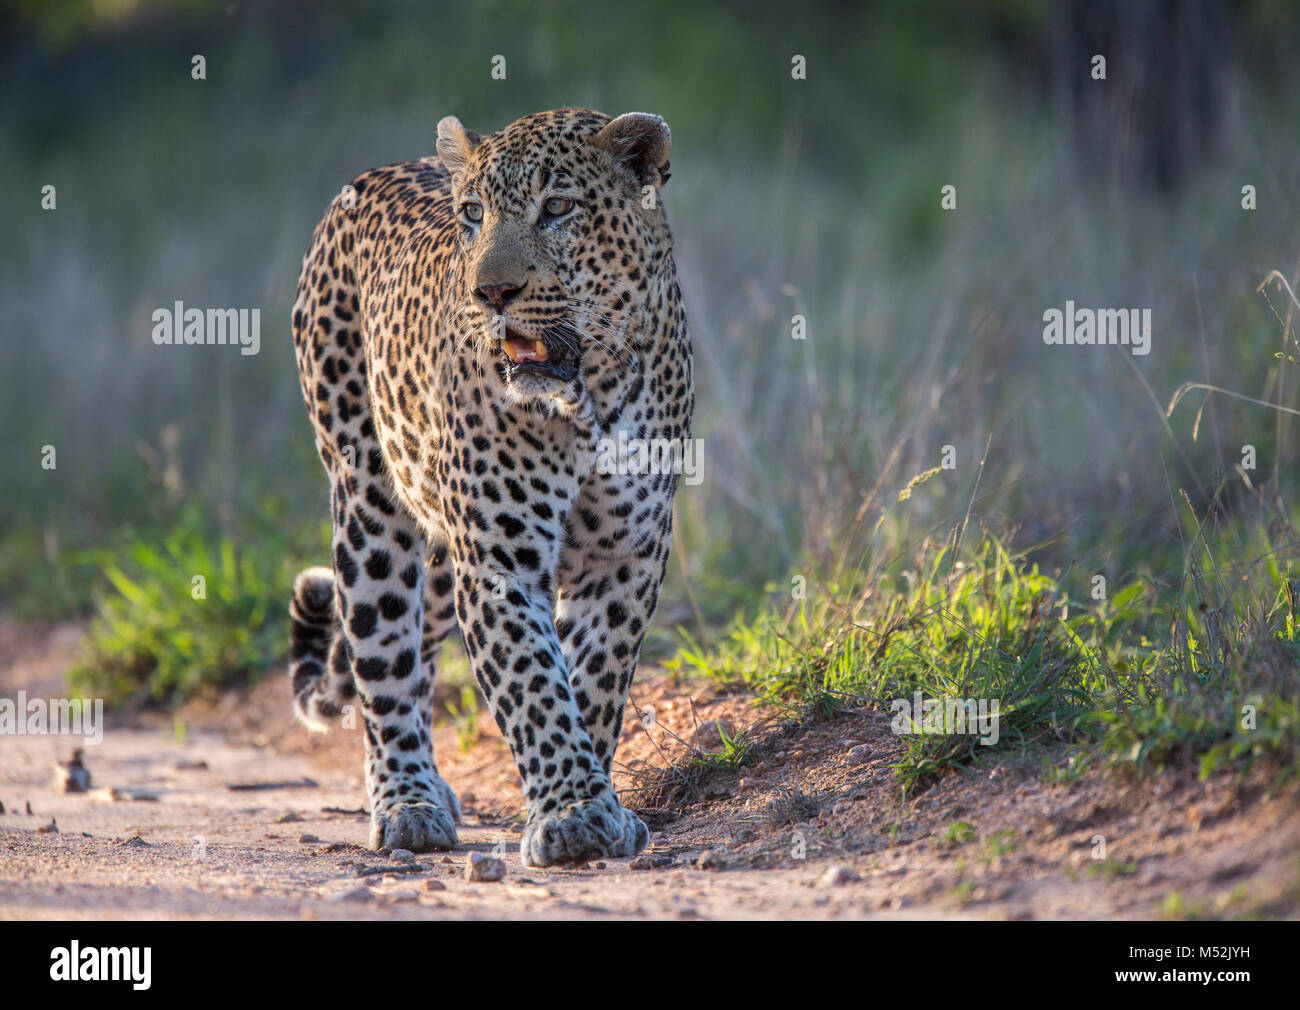 Male leopard (Panthera pardus) walking in warm sunlight Stock Photo